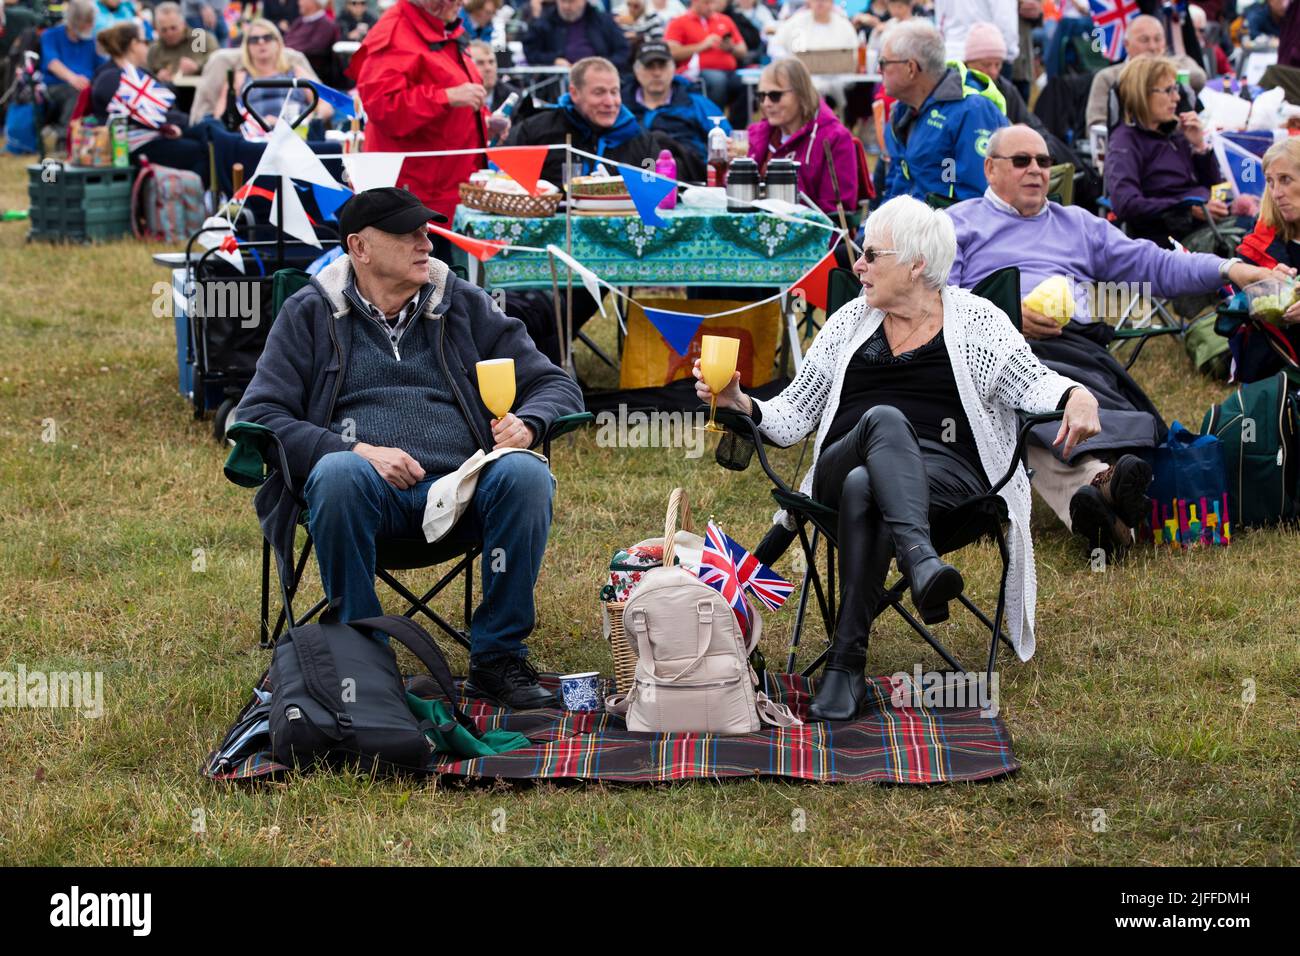 Woodstock, Oxfordshire, Großbritannien. 2.. Juli 2022. Paar mit Drings und Union Jack. Battle Prom Picknick-Konzerte. Blenheim Palace. Vereinigtes Königreich. Quelle: Alexander Caminada/Alamy Live News Stockfoto